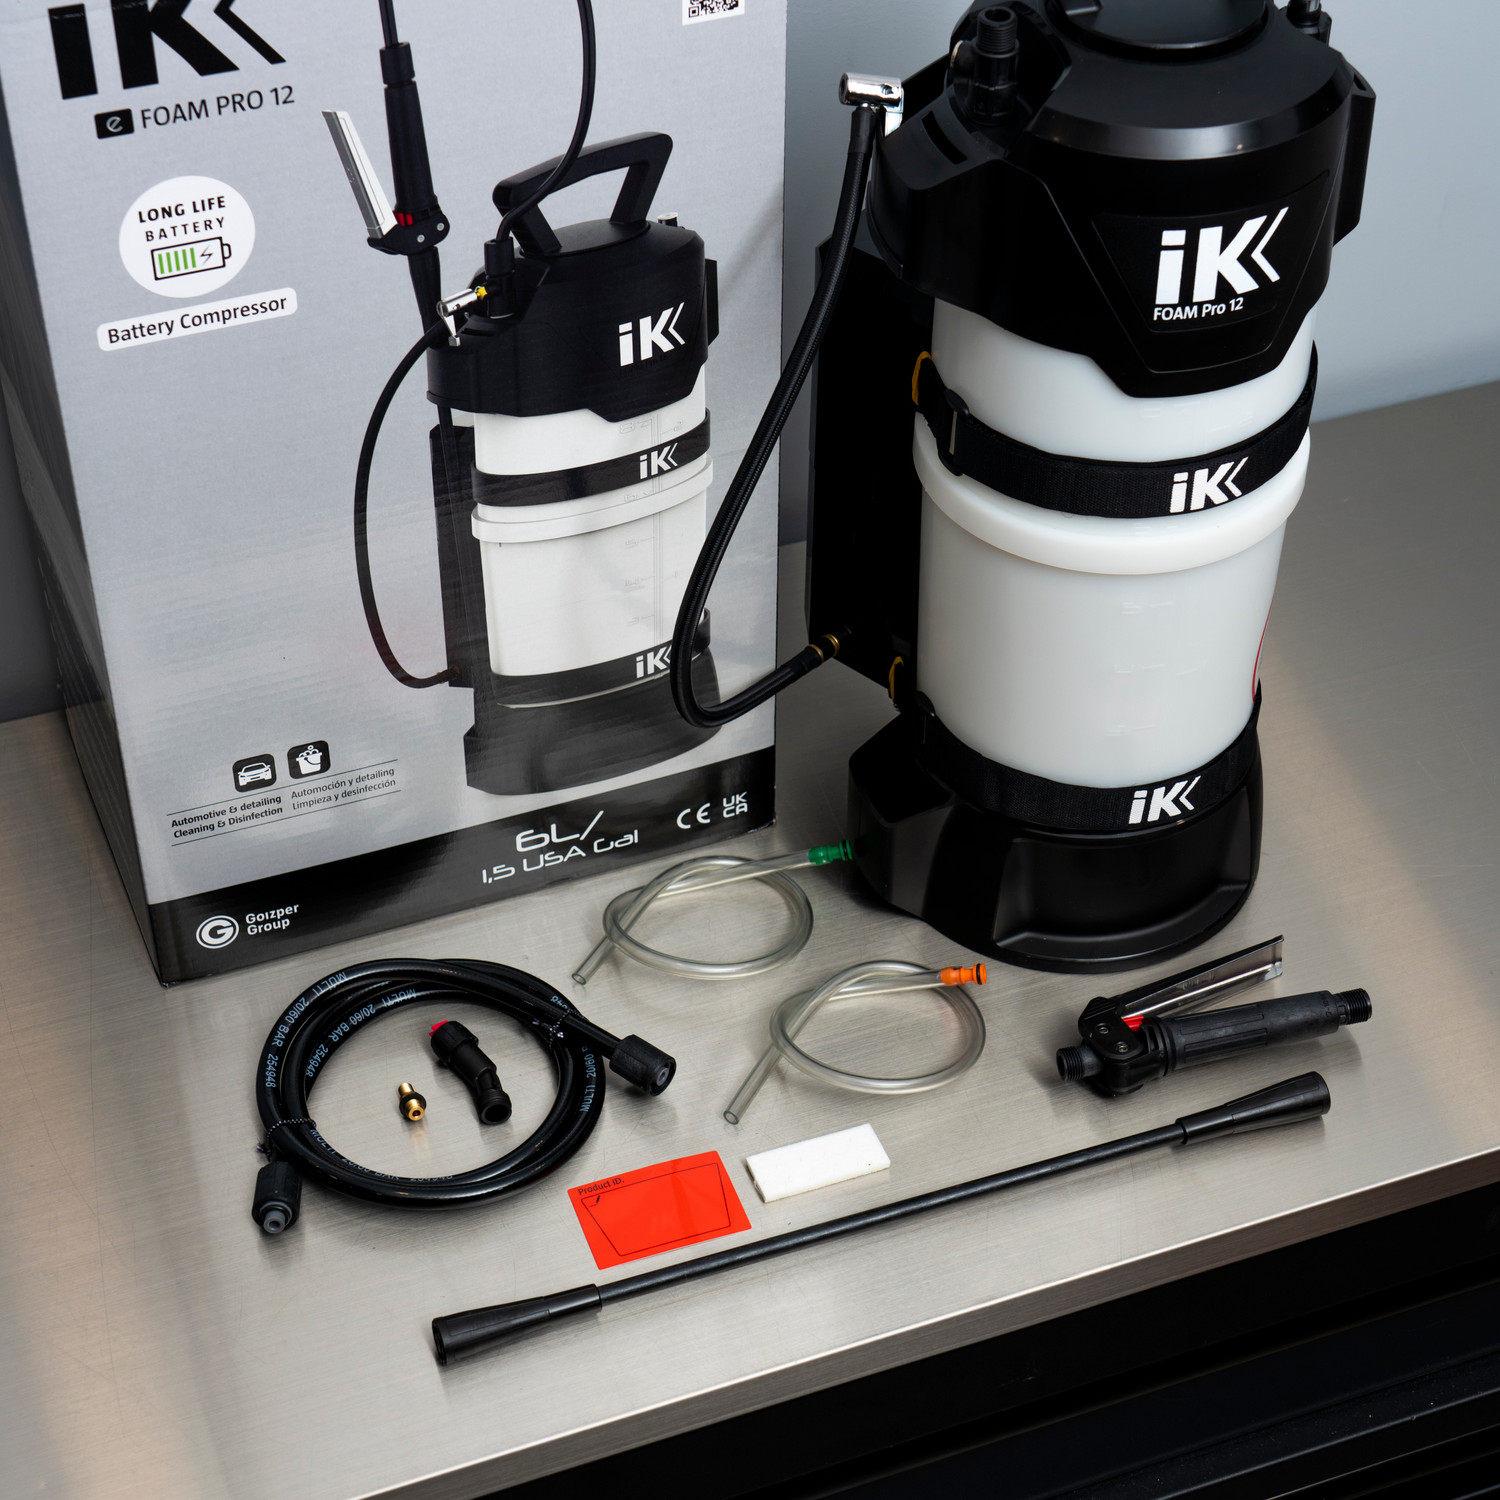 IK - Foam Pro 12